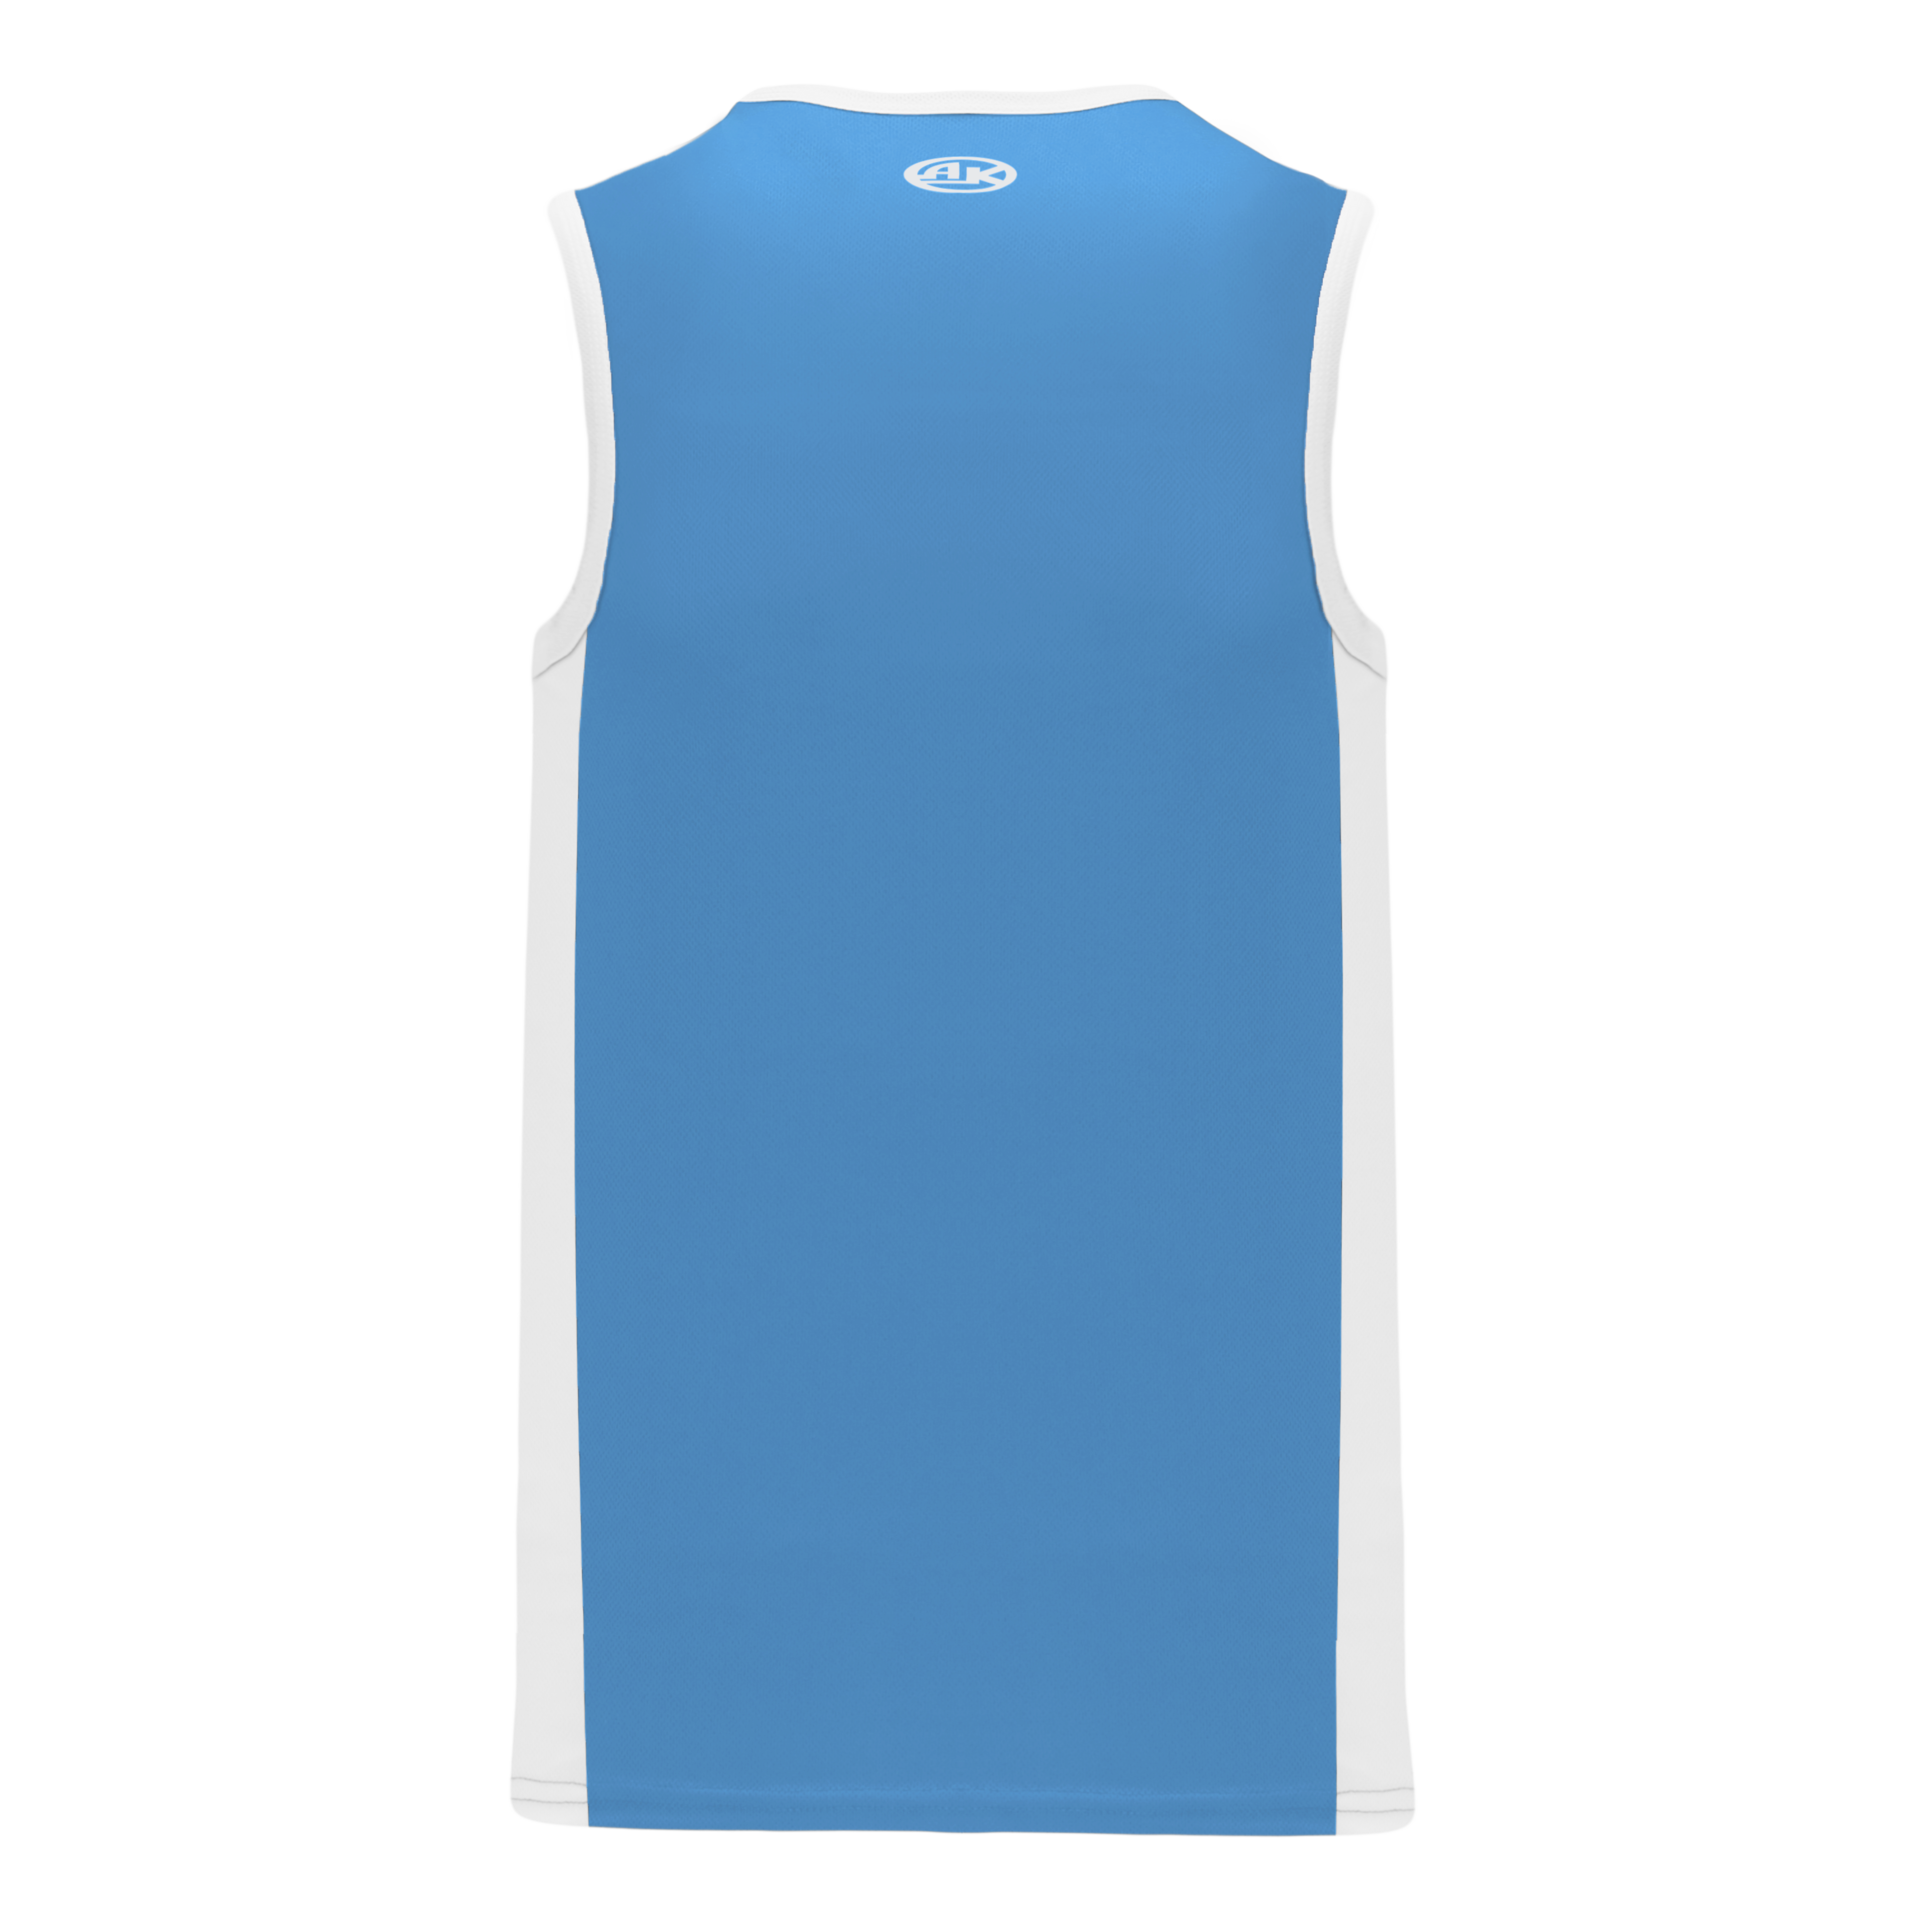 Sky Blue Basketball Uniform